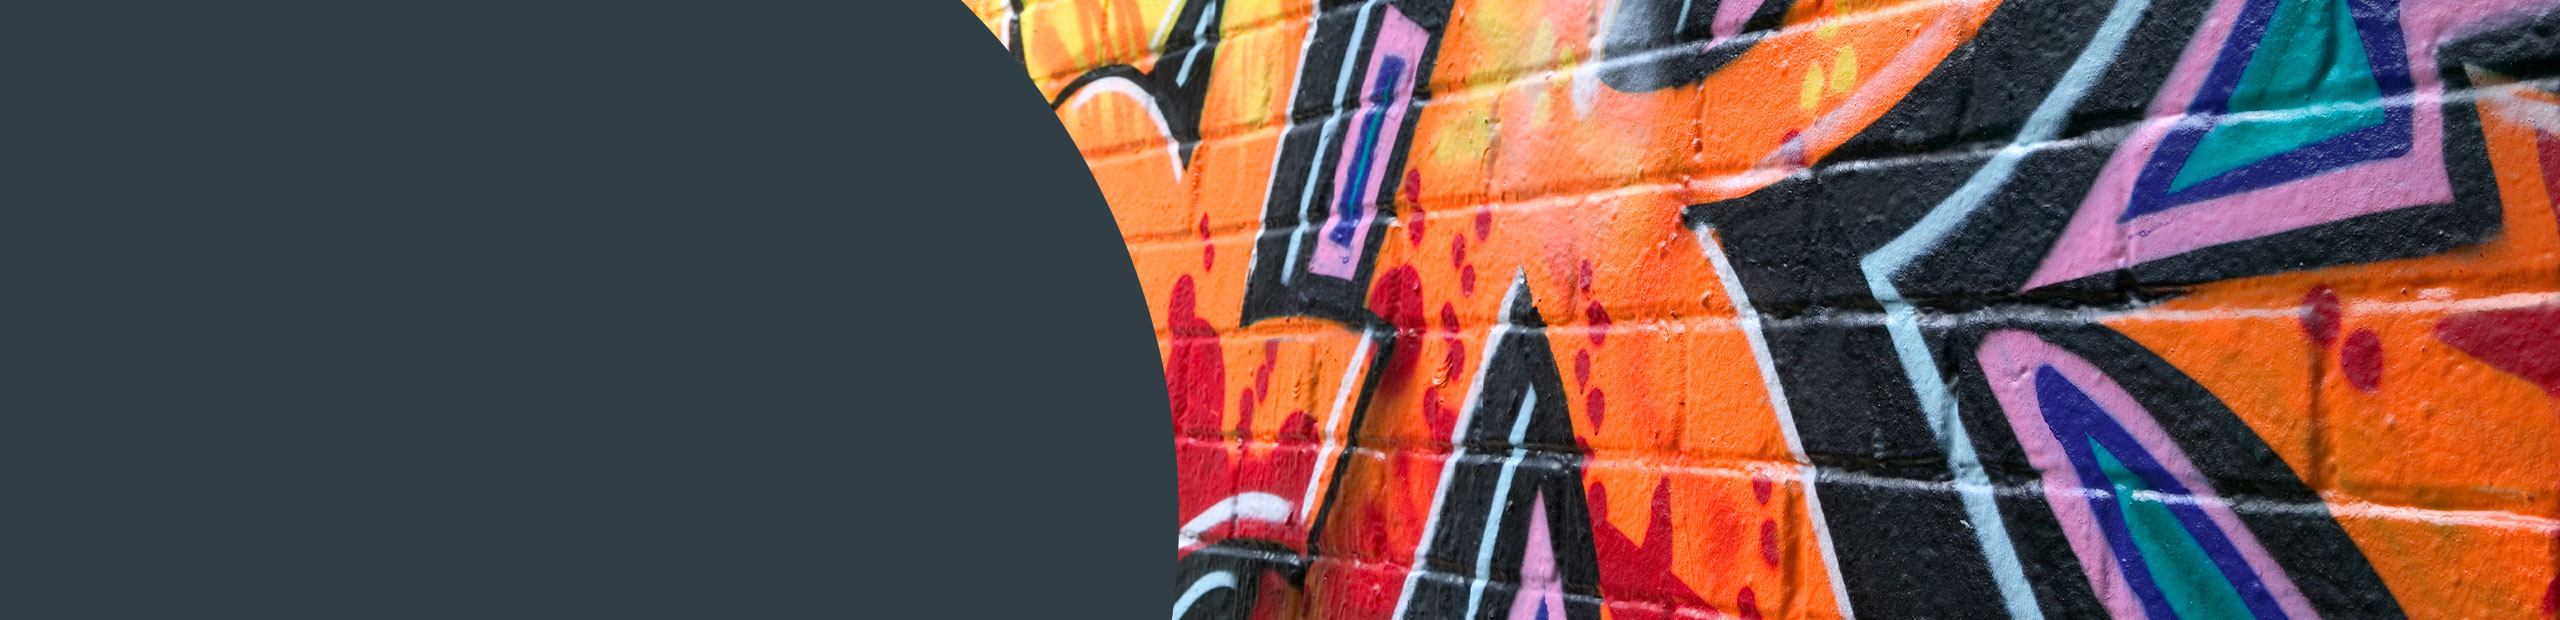 Graffiti Removal Services - Croydon